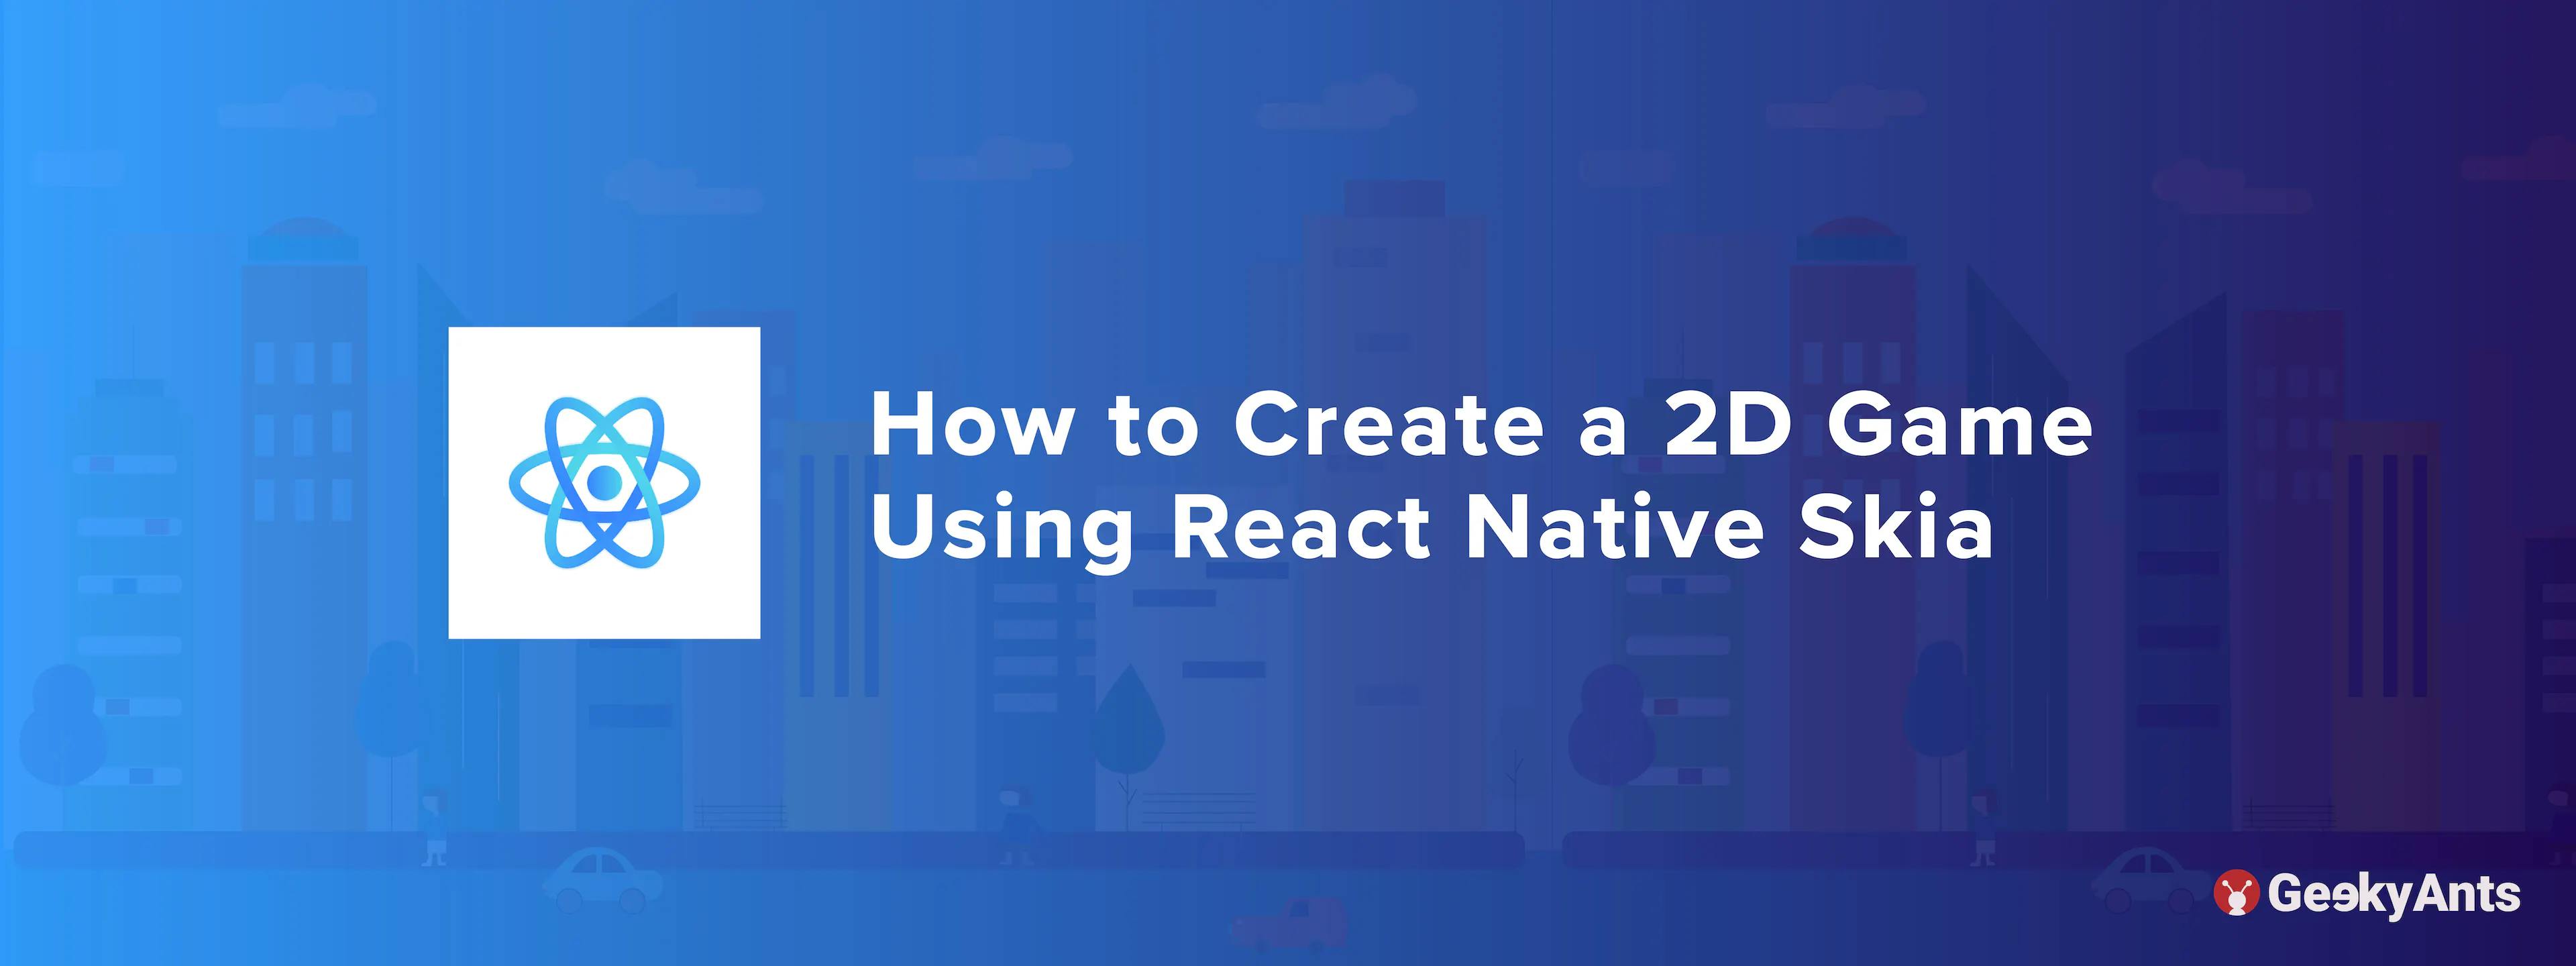 How to Create a 2D Game Using React Native Skia